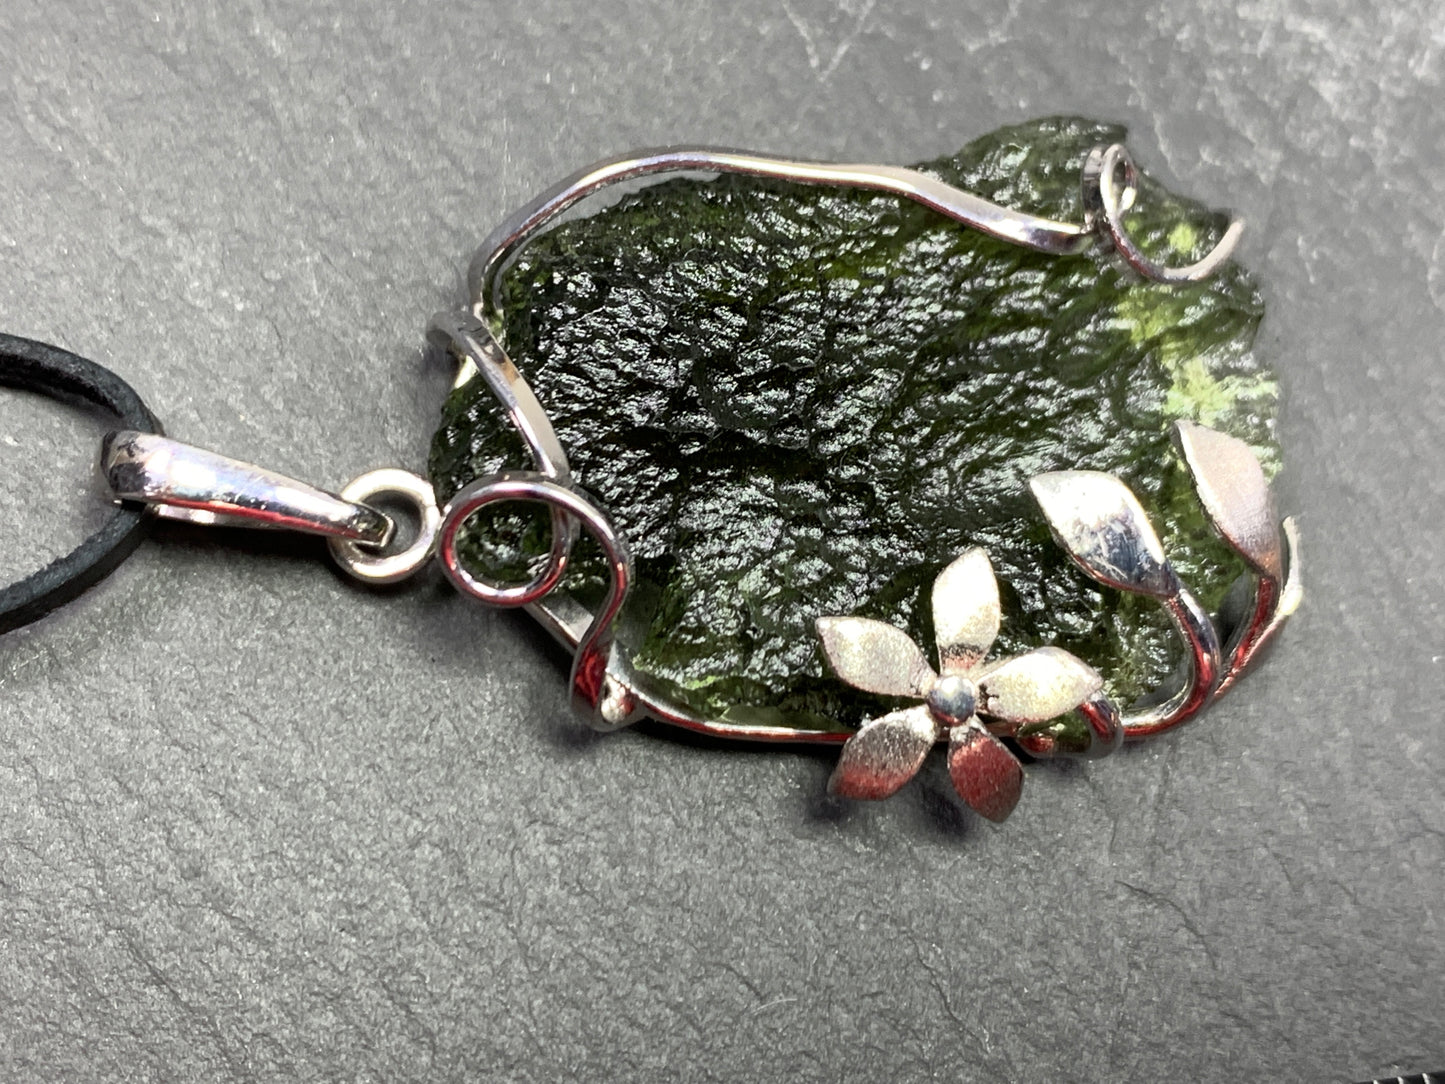 Moldavite pendant with Flower